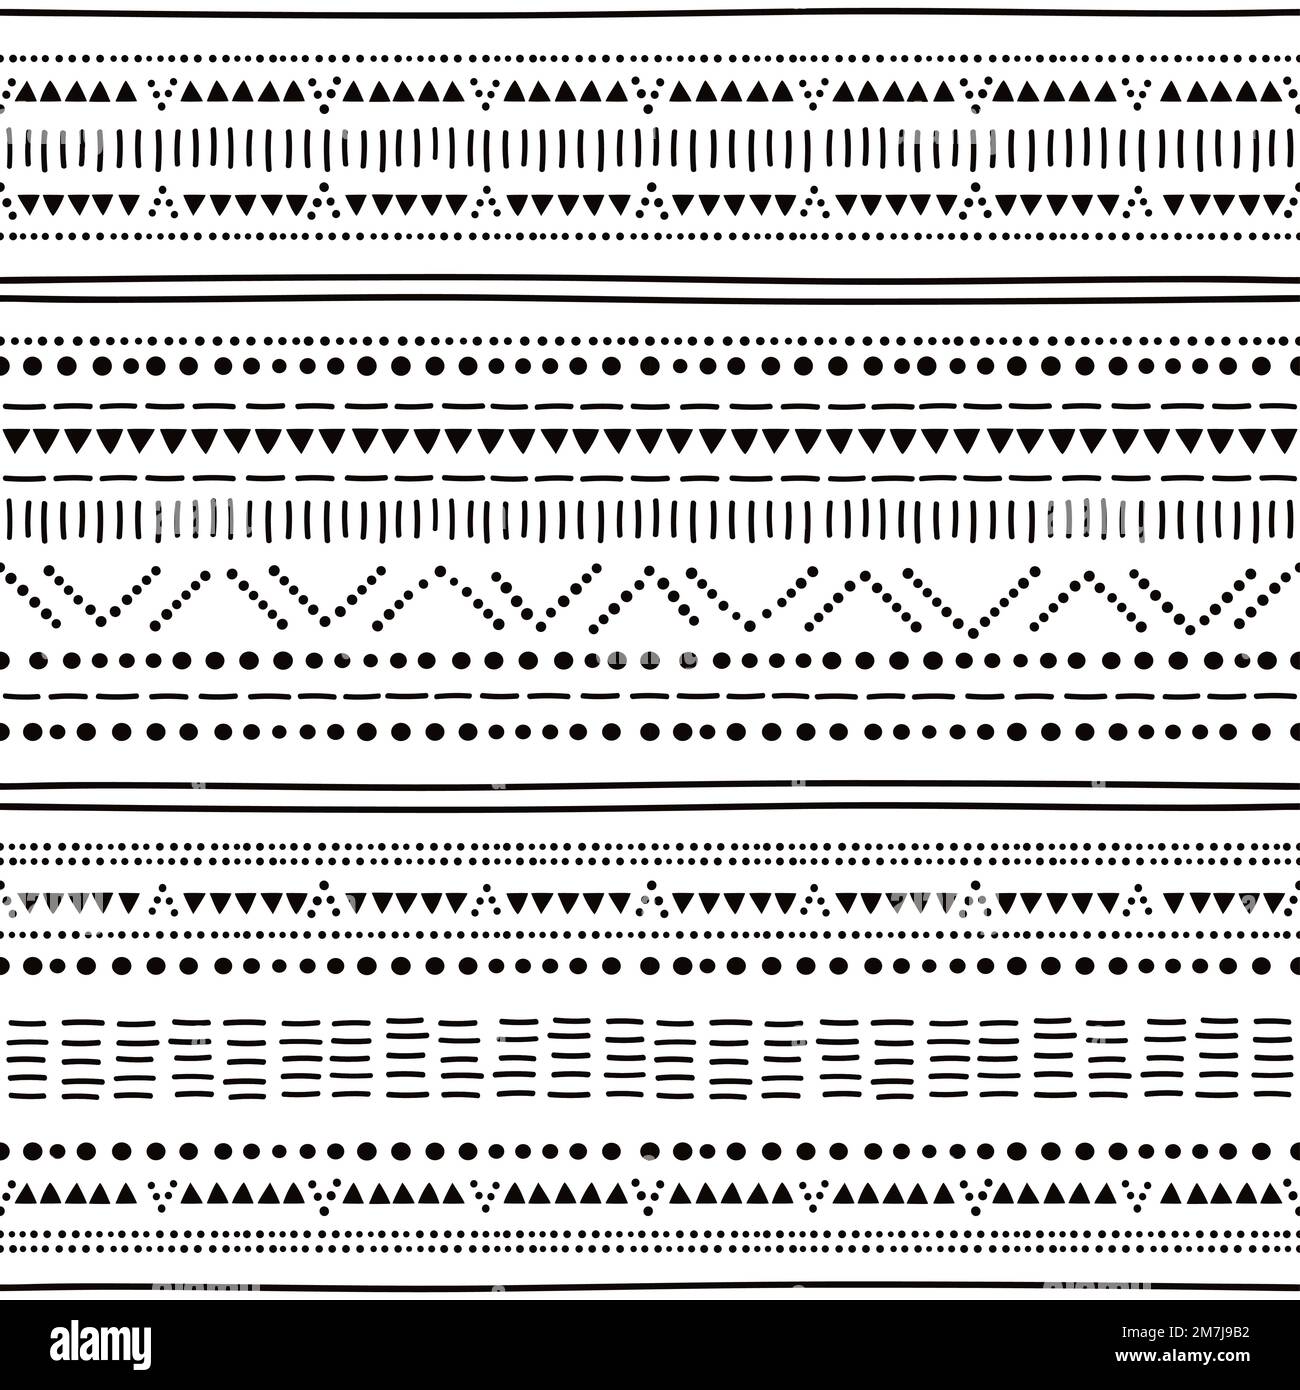 Poterie préhistorique la culture de Bell Beaker a inspiré un motif sans couture avec des points et des lignes en noir et blanc Illustration de Vecteur